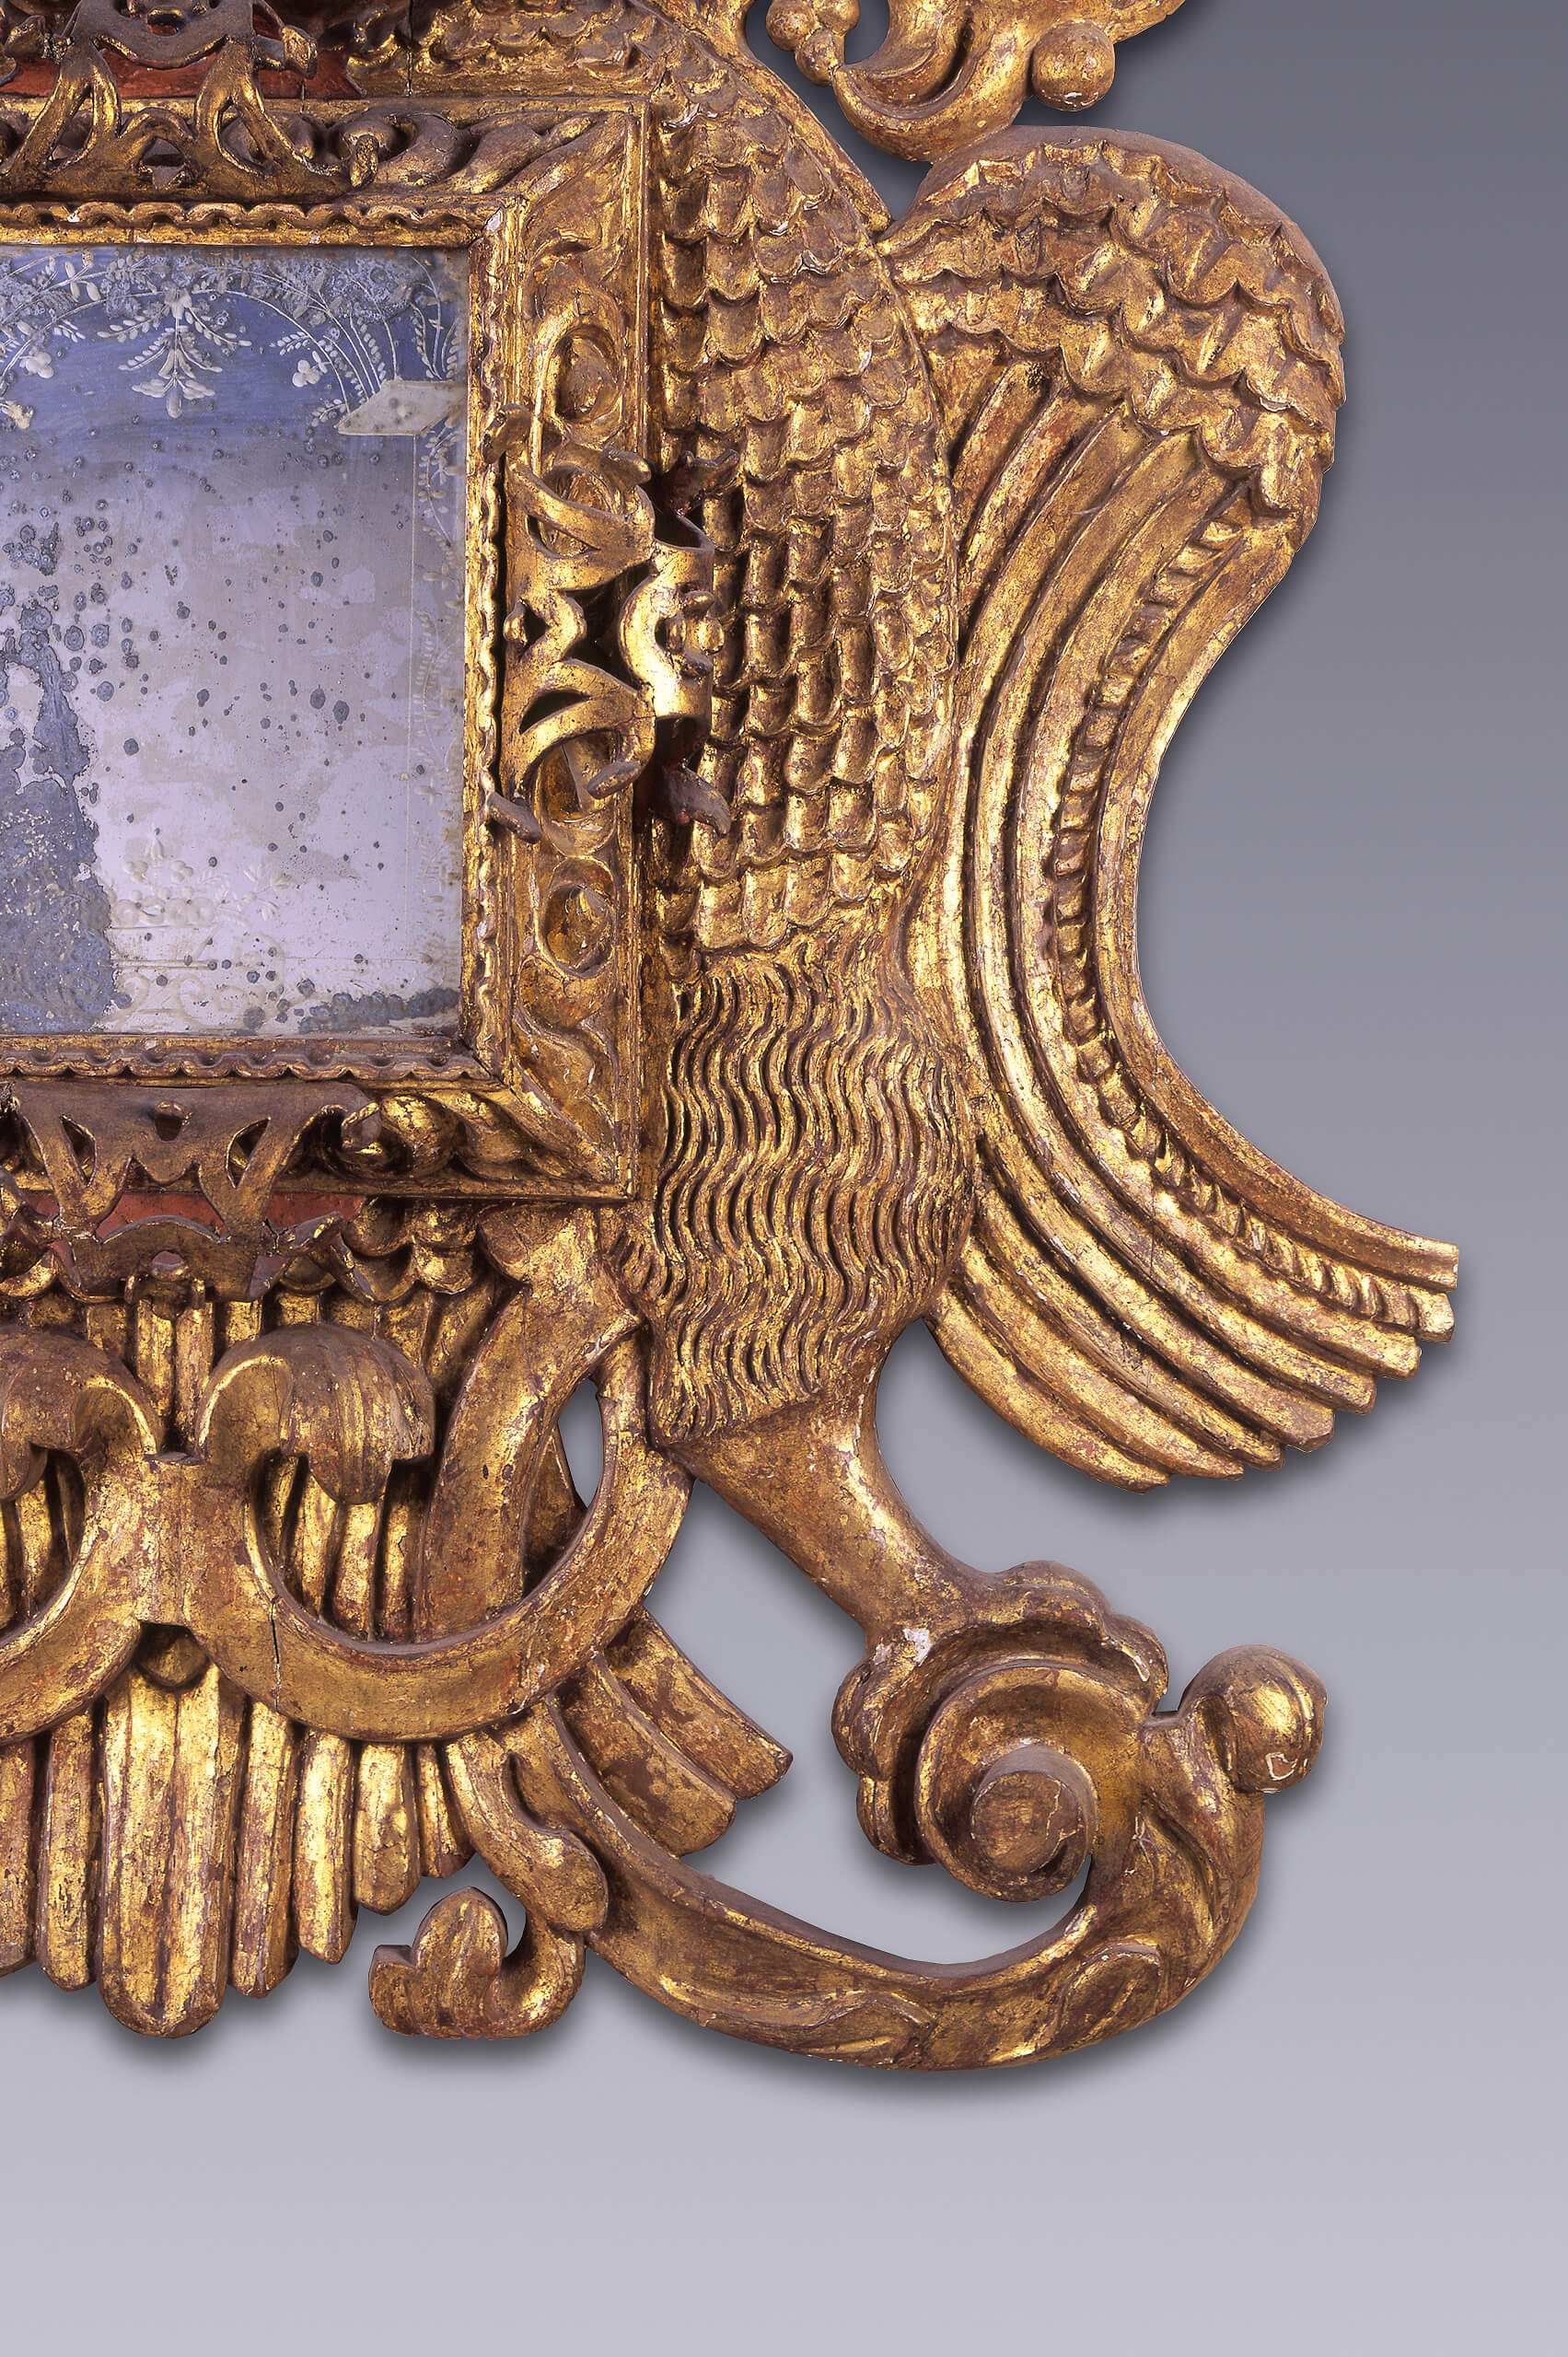 Par de espejos en forma de águilas bicéfalas | Salas de Arte Virreinal y Siglo XIX | Museo Amparo, Puebla